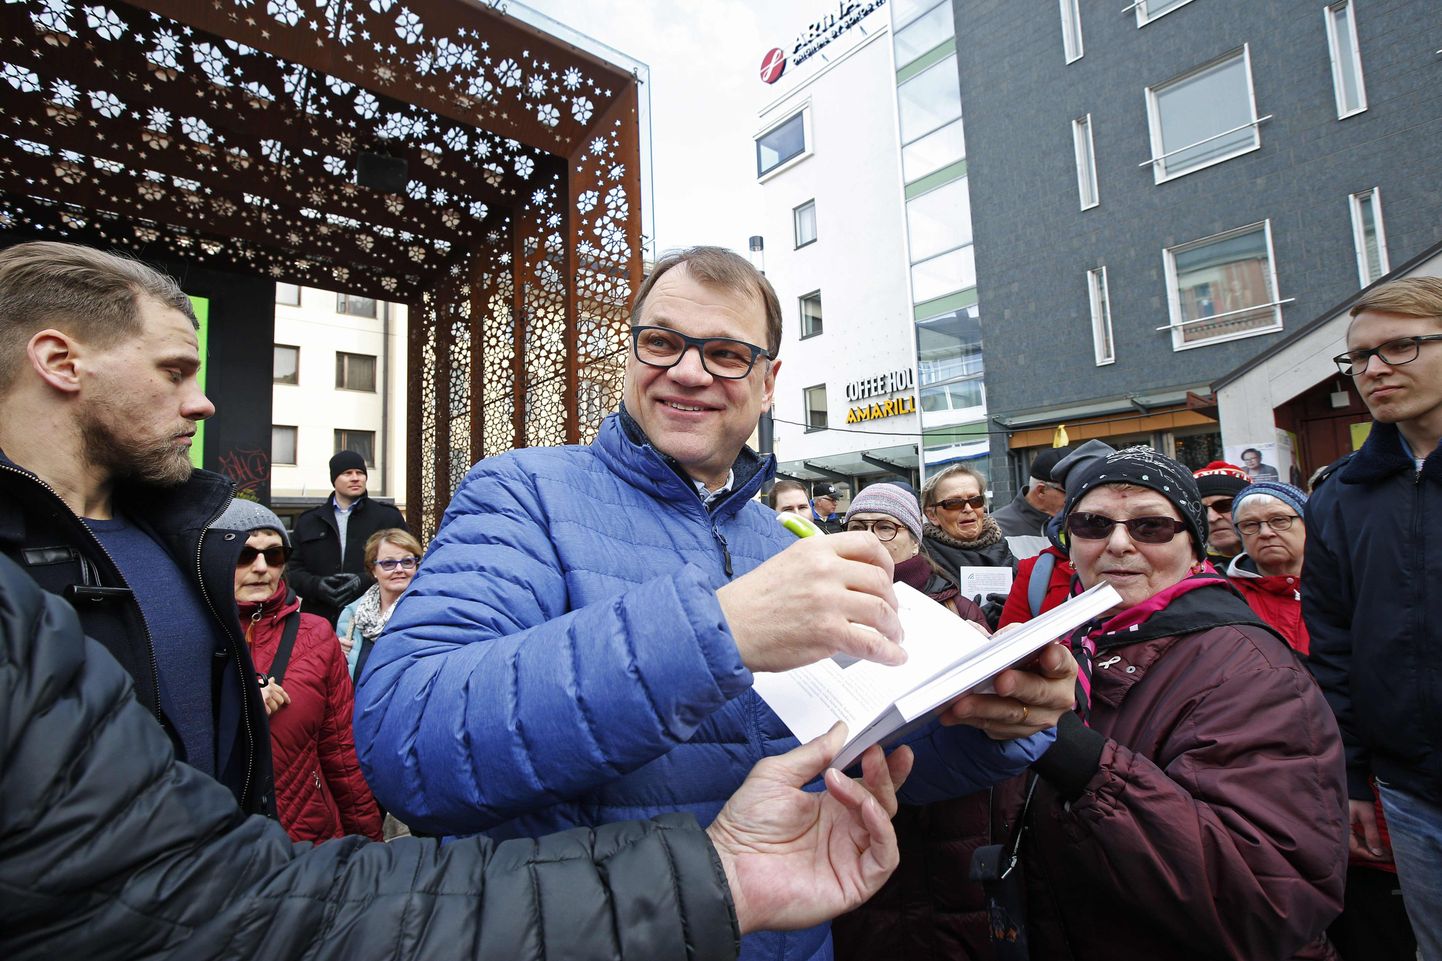 Soome valitseva Keskerakonna esimees Juha Sipilä andis oma raamatule autogramme valimiskampaania tuuri sees.